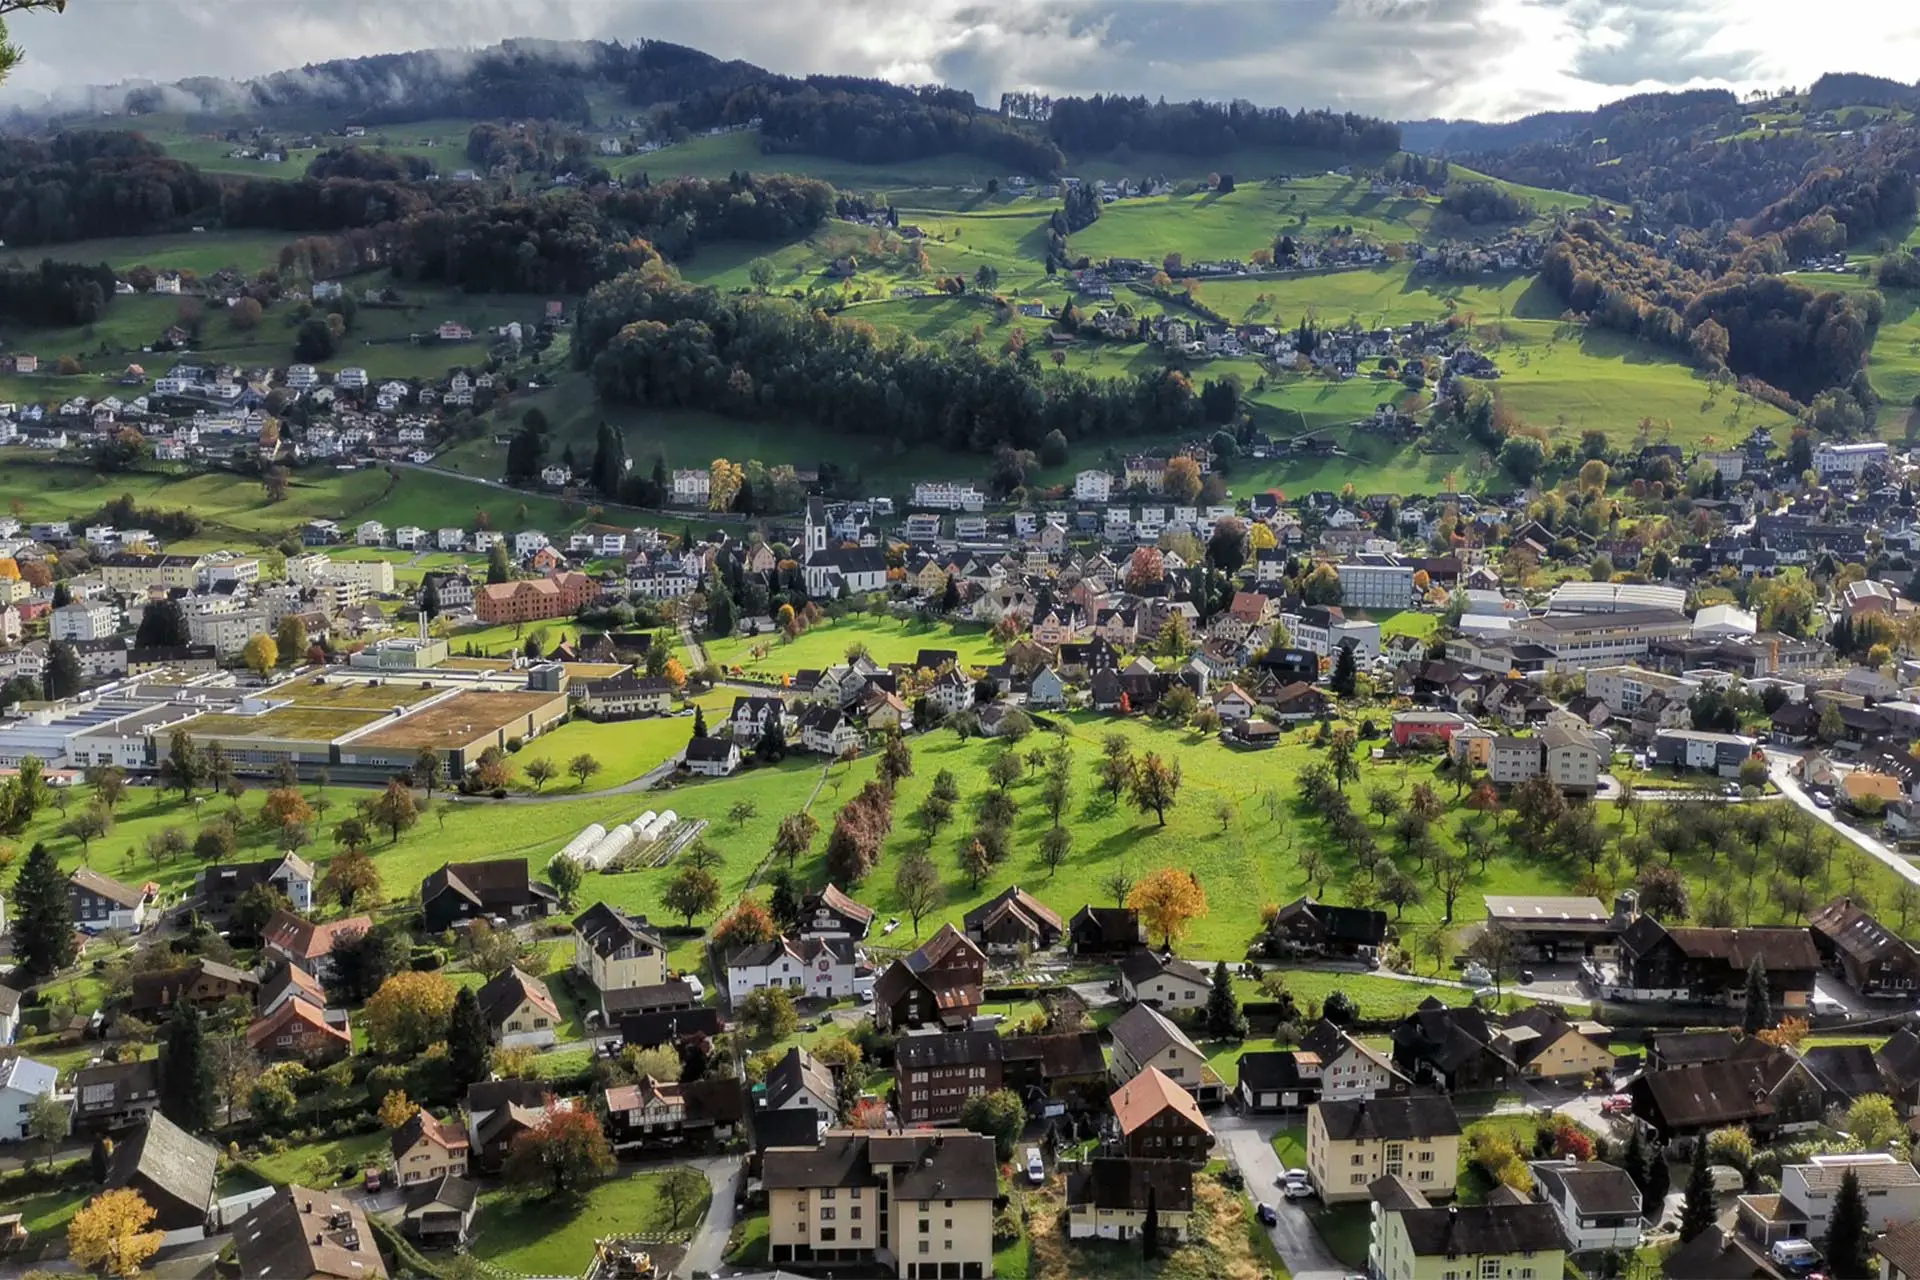 La randonnée gastronomique offre un paysage digne d'une carte postale près de St.Gallen.